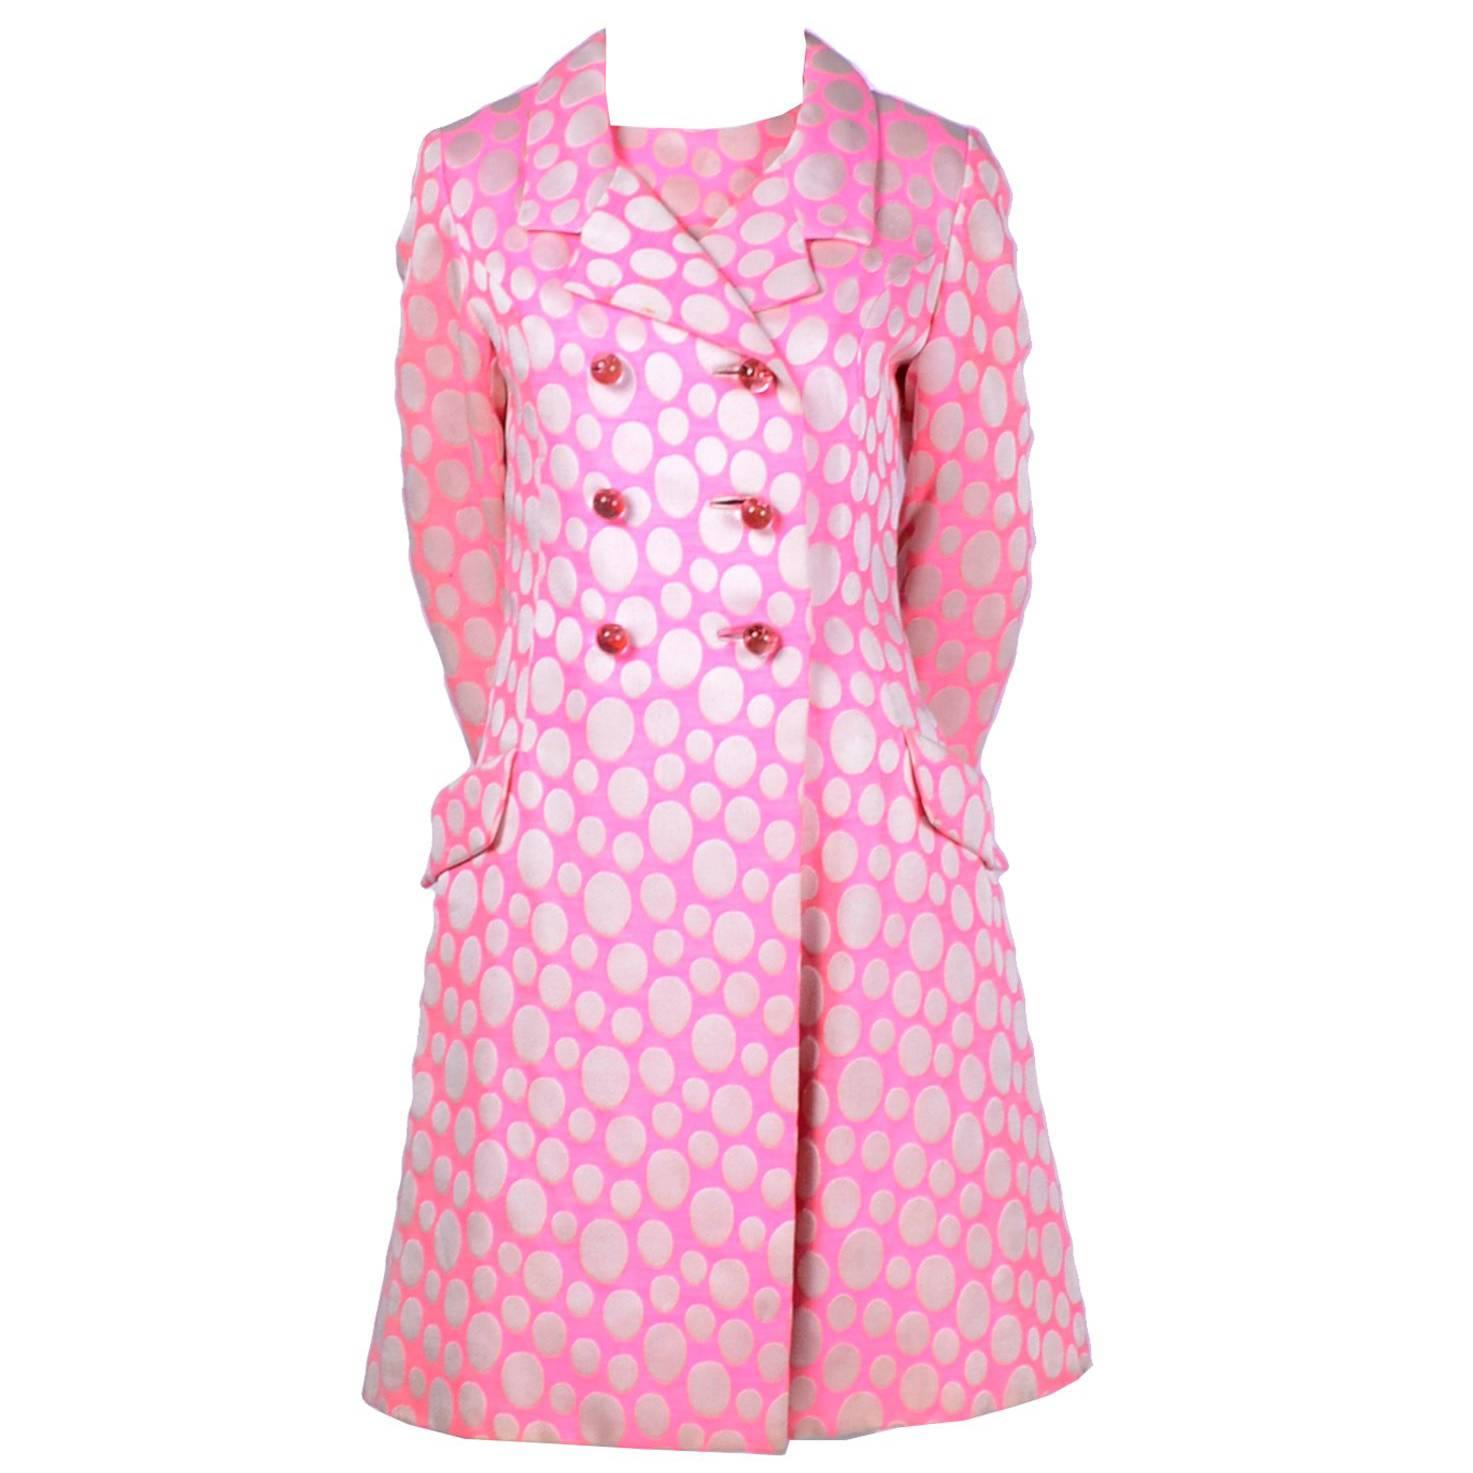 1960s Mod Vintage Pink Polka Dot Sleeveless Dress & Coat Suit Crest Room